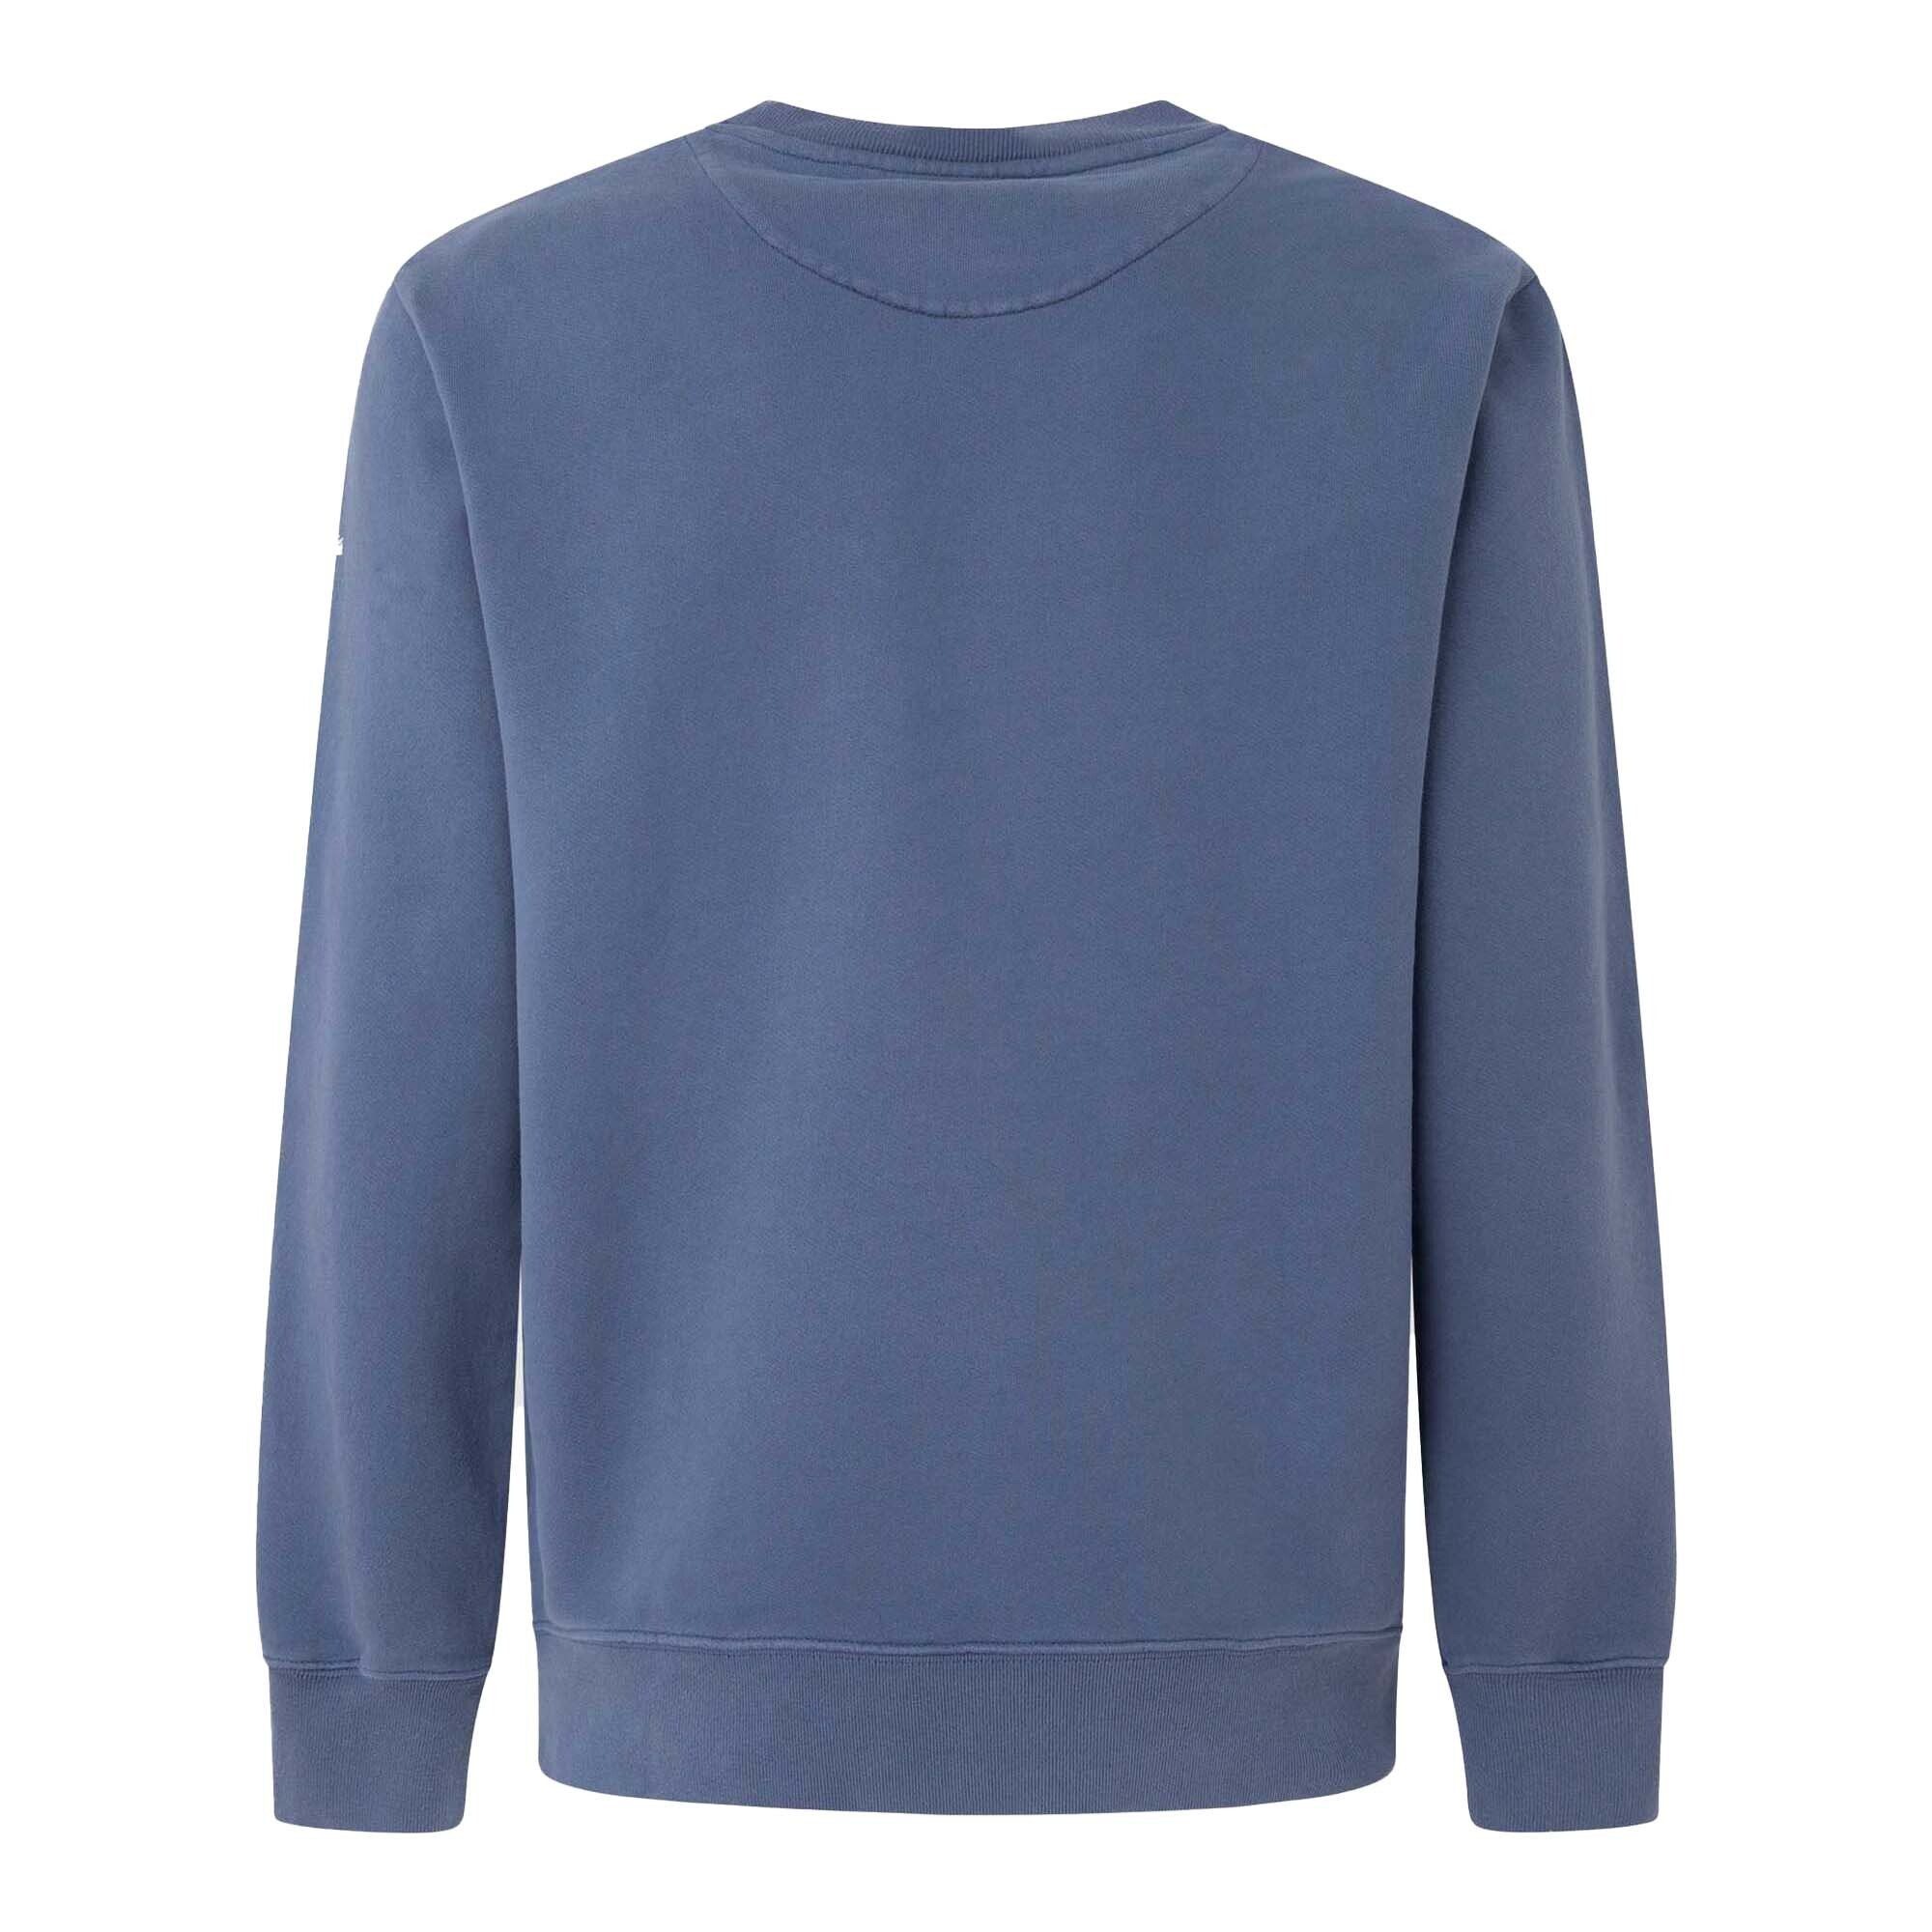 Herren - Pepe DAVID Blau Pullover Sweatshirt Sweatshirt Jeans CREW,